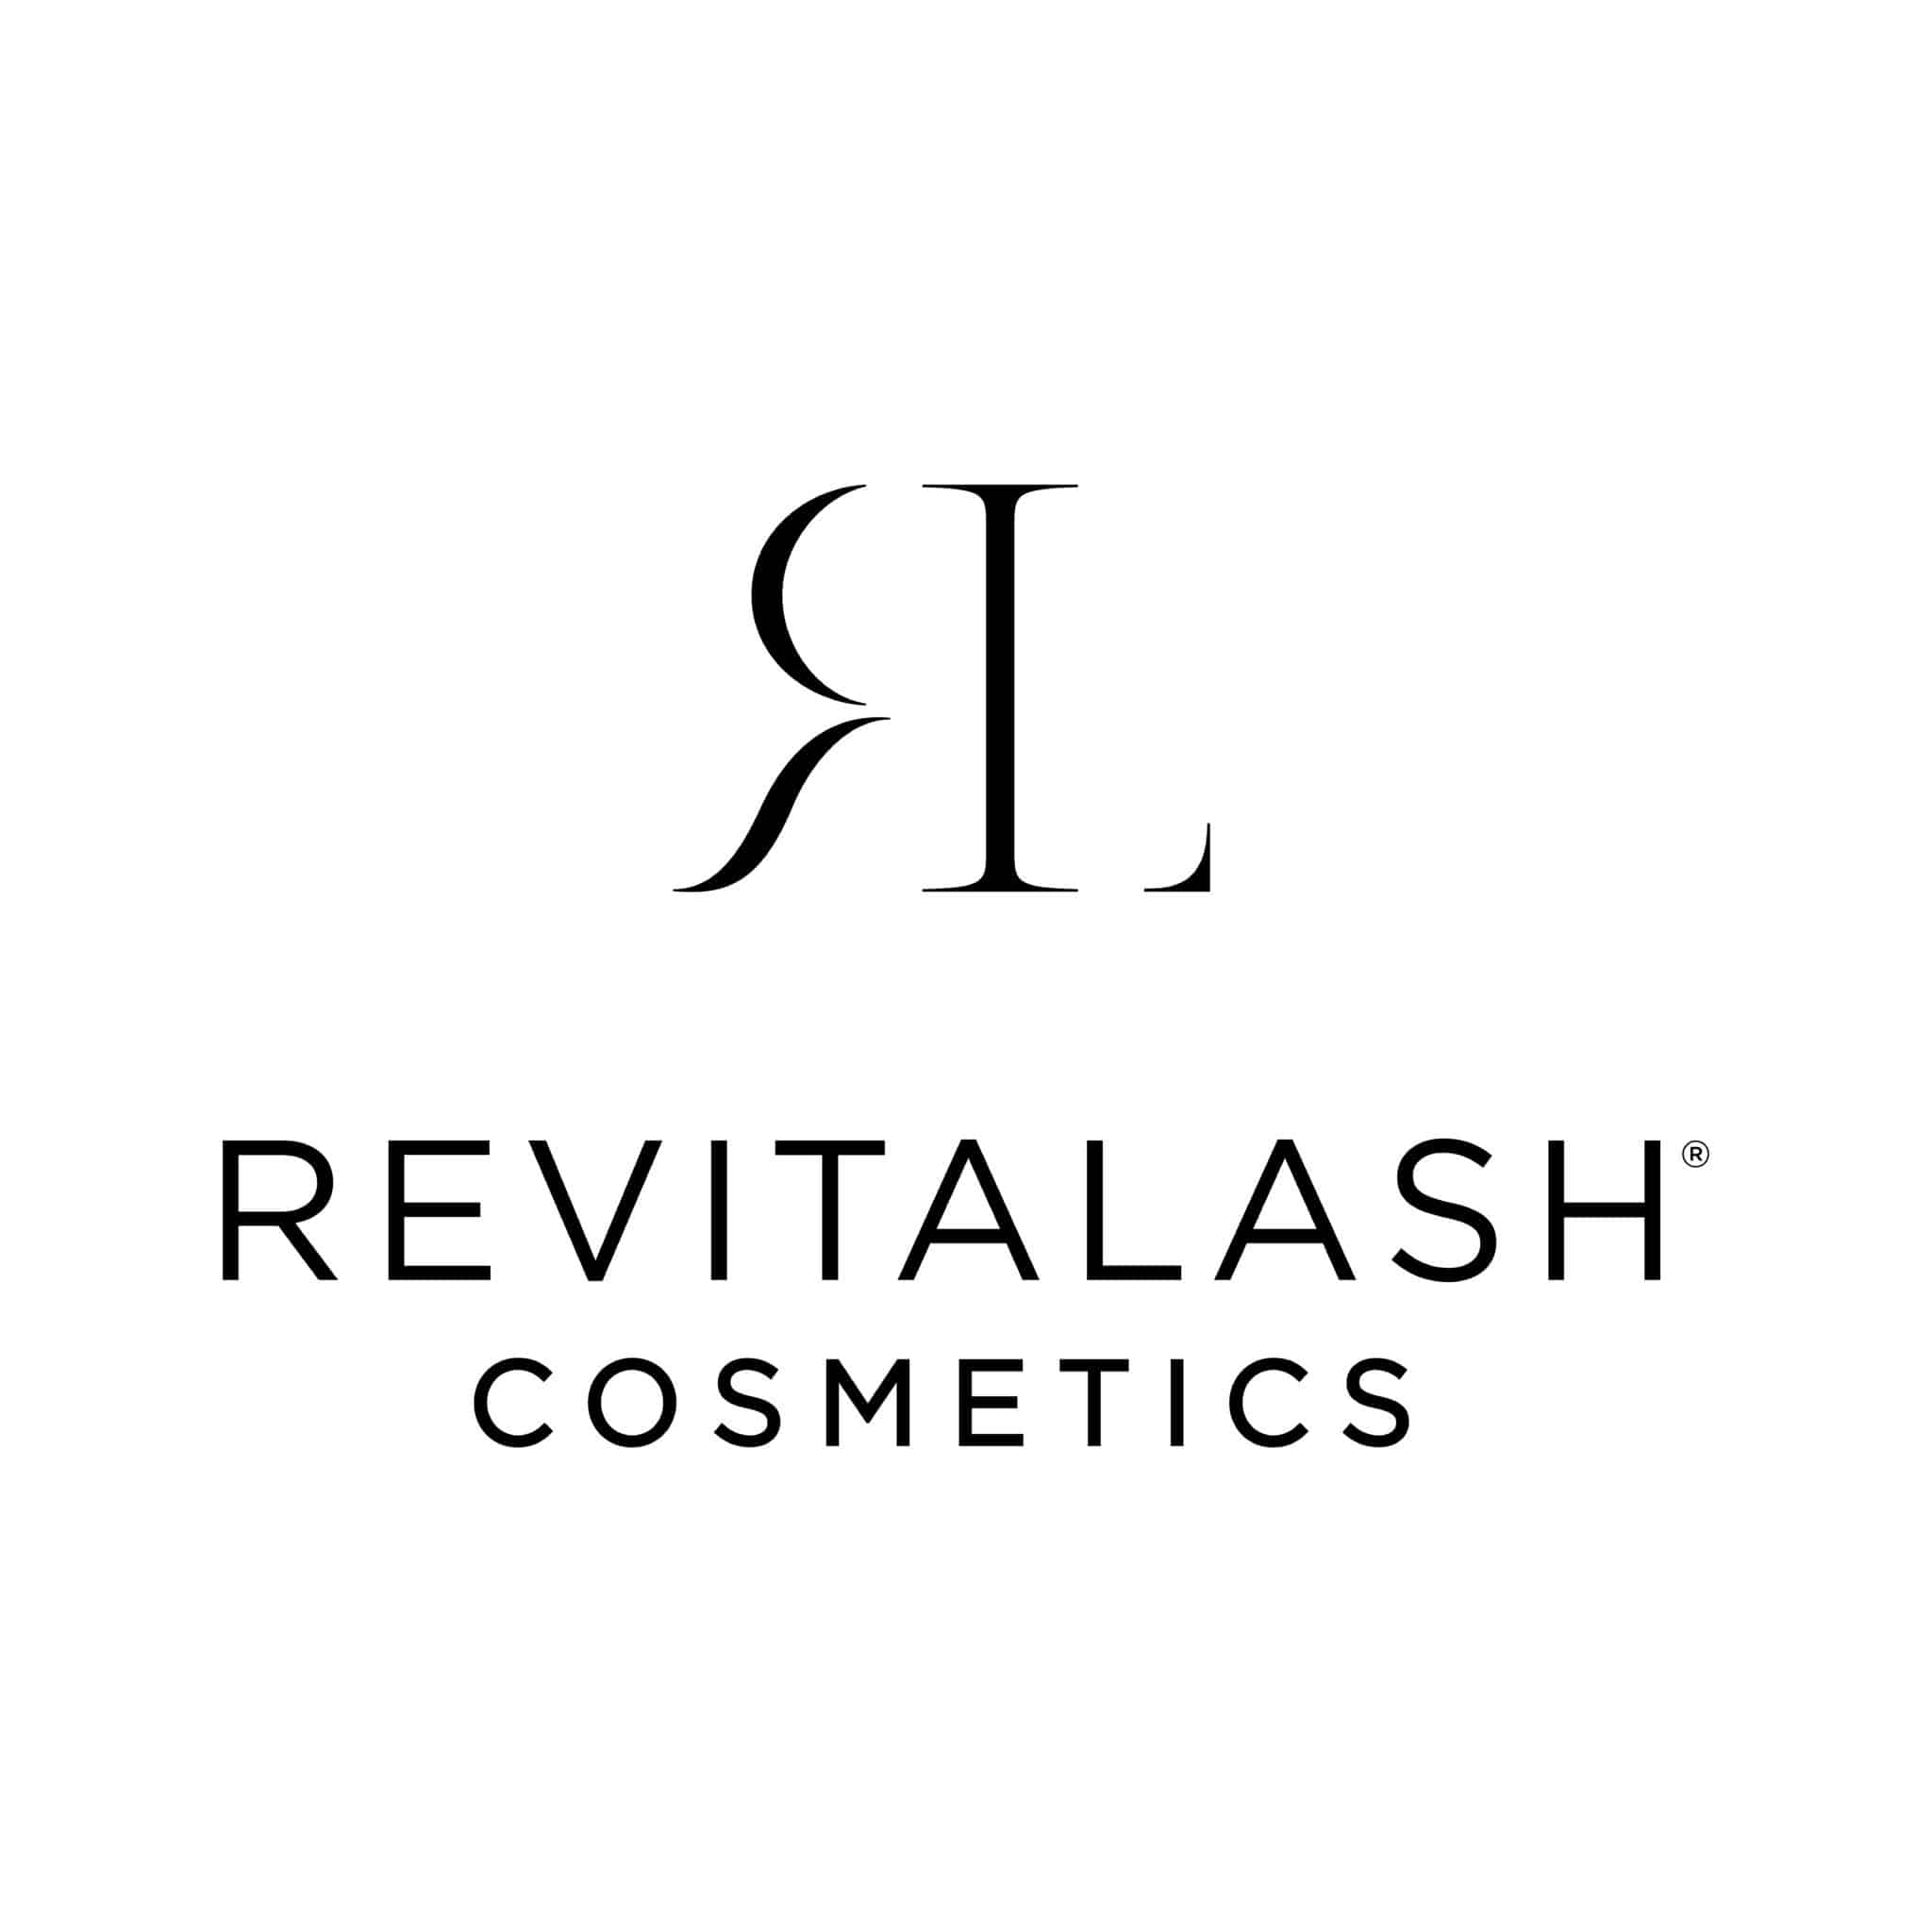 Revitalash cosmetics logo Srbija